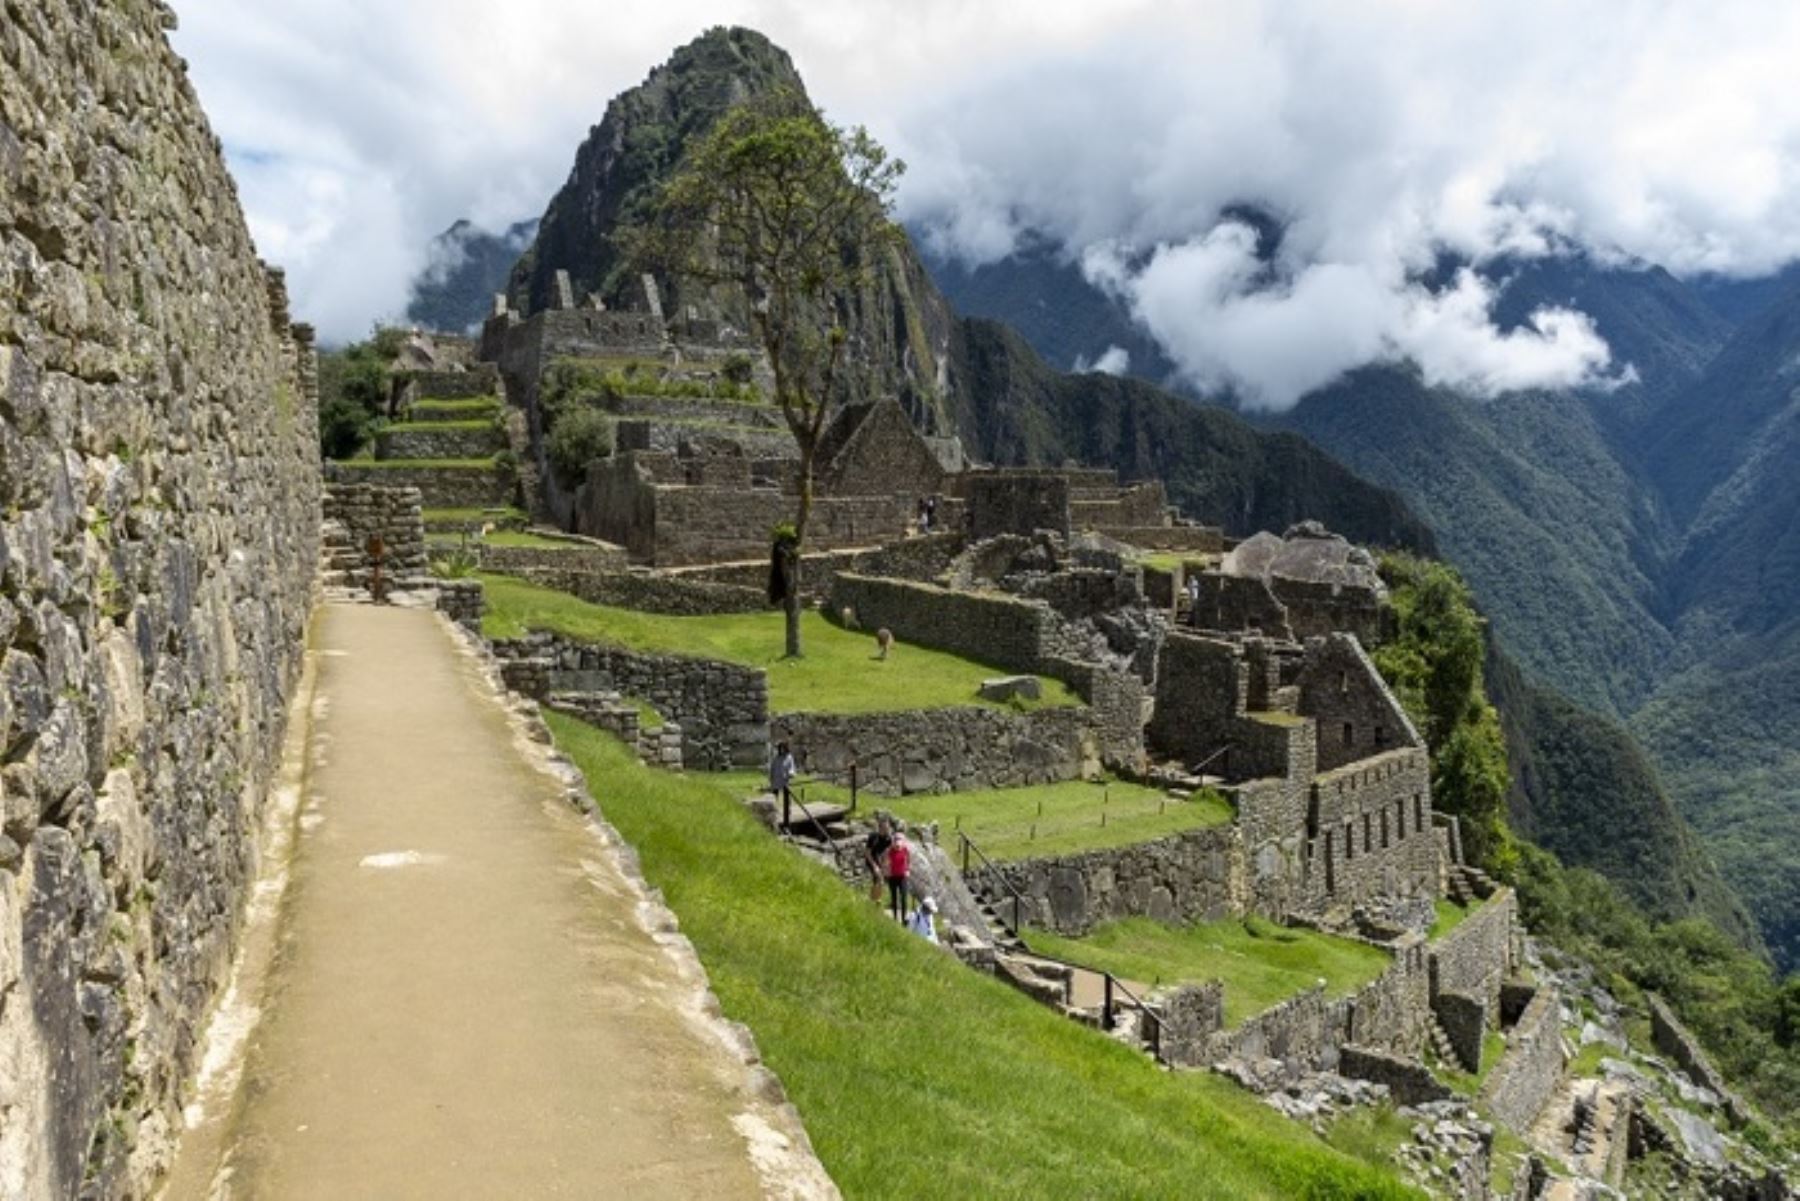 La Municipalidad de Machu Picchu ofrecerá una misa a las 08:00 horas. A las 09:00 horas se procederá con el Paseo de la Bandera, izamiento del Pabellón Nacional y la bandera del Cusco.